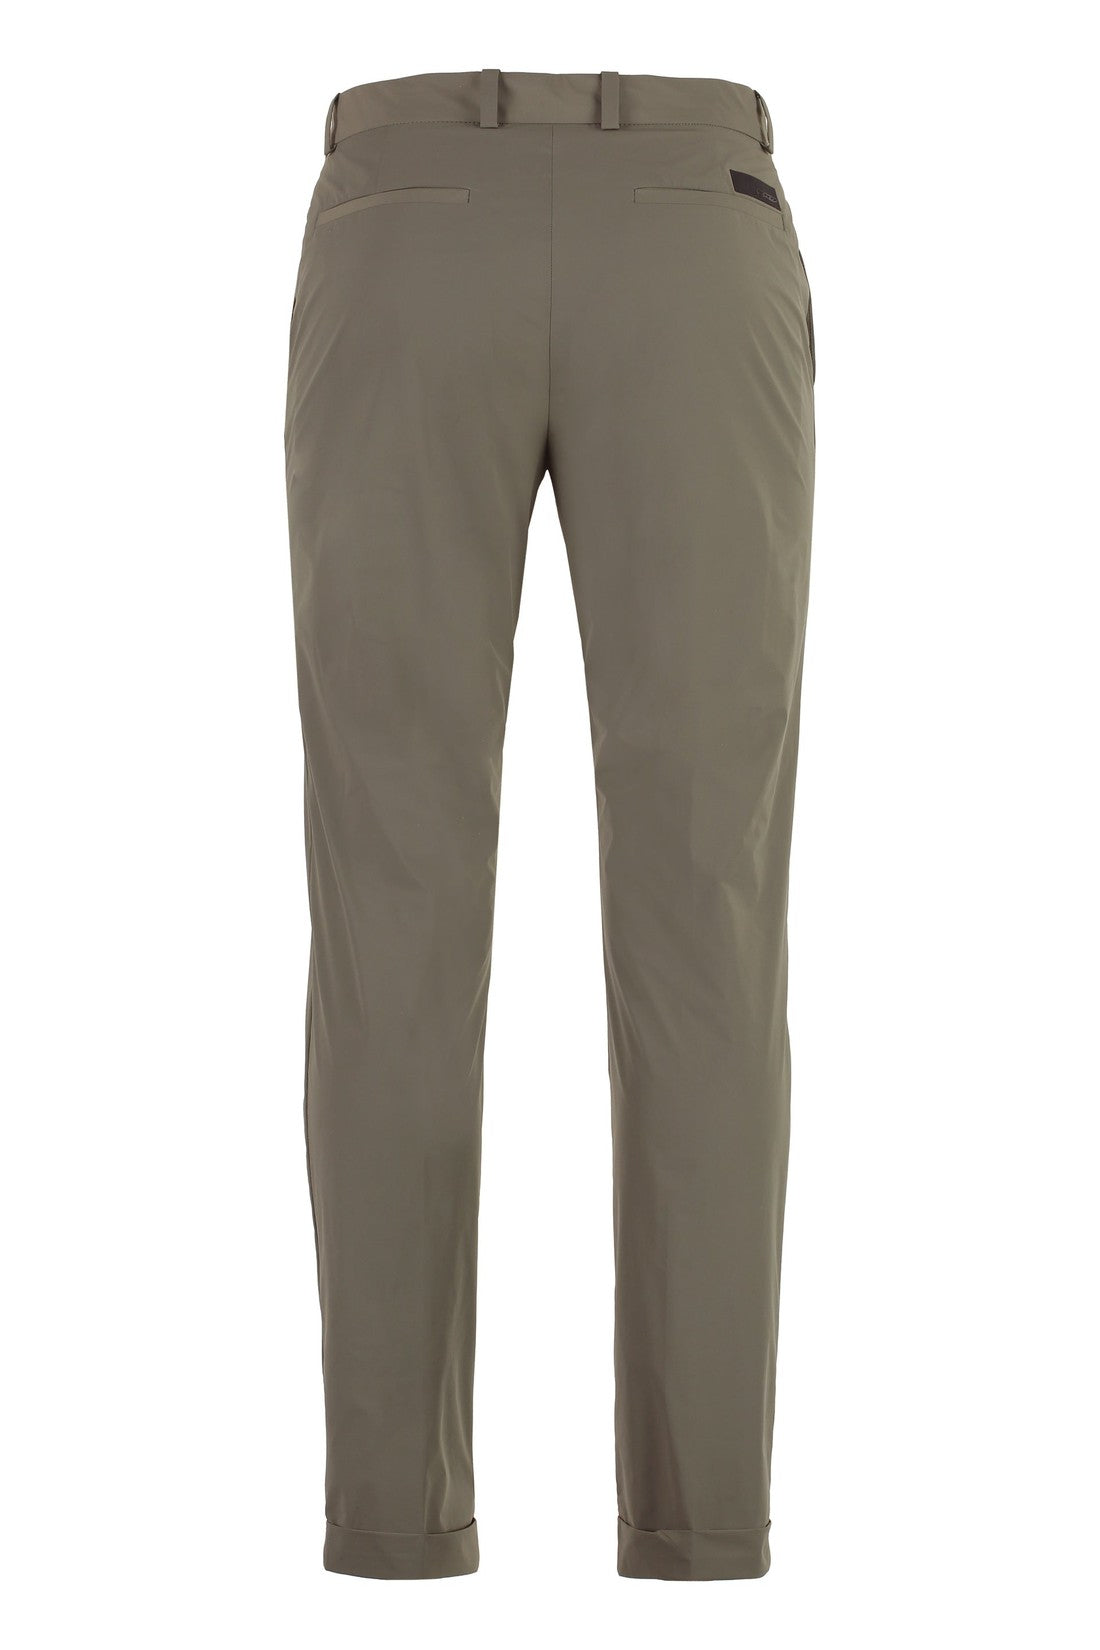 RRD-OUTLET-SALE-Chino pants nylon-ARCHIVIST